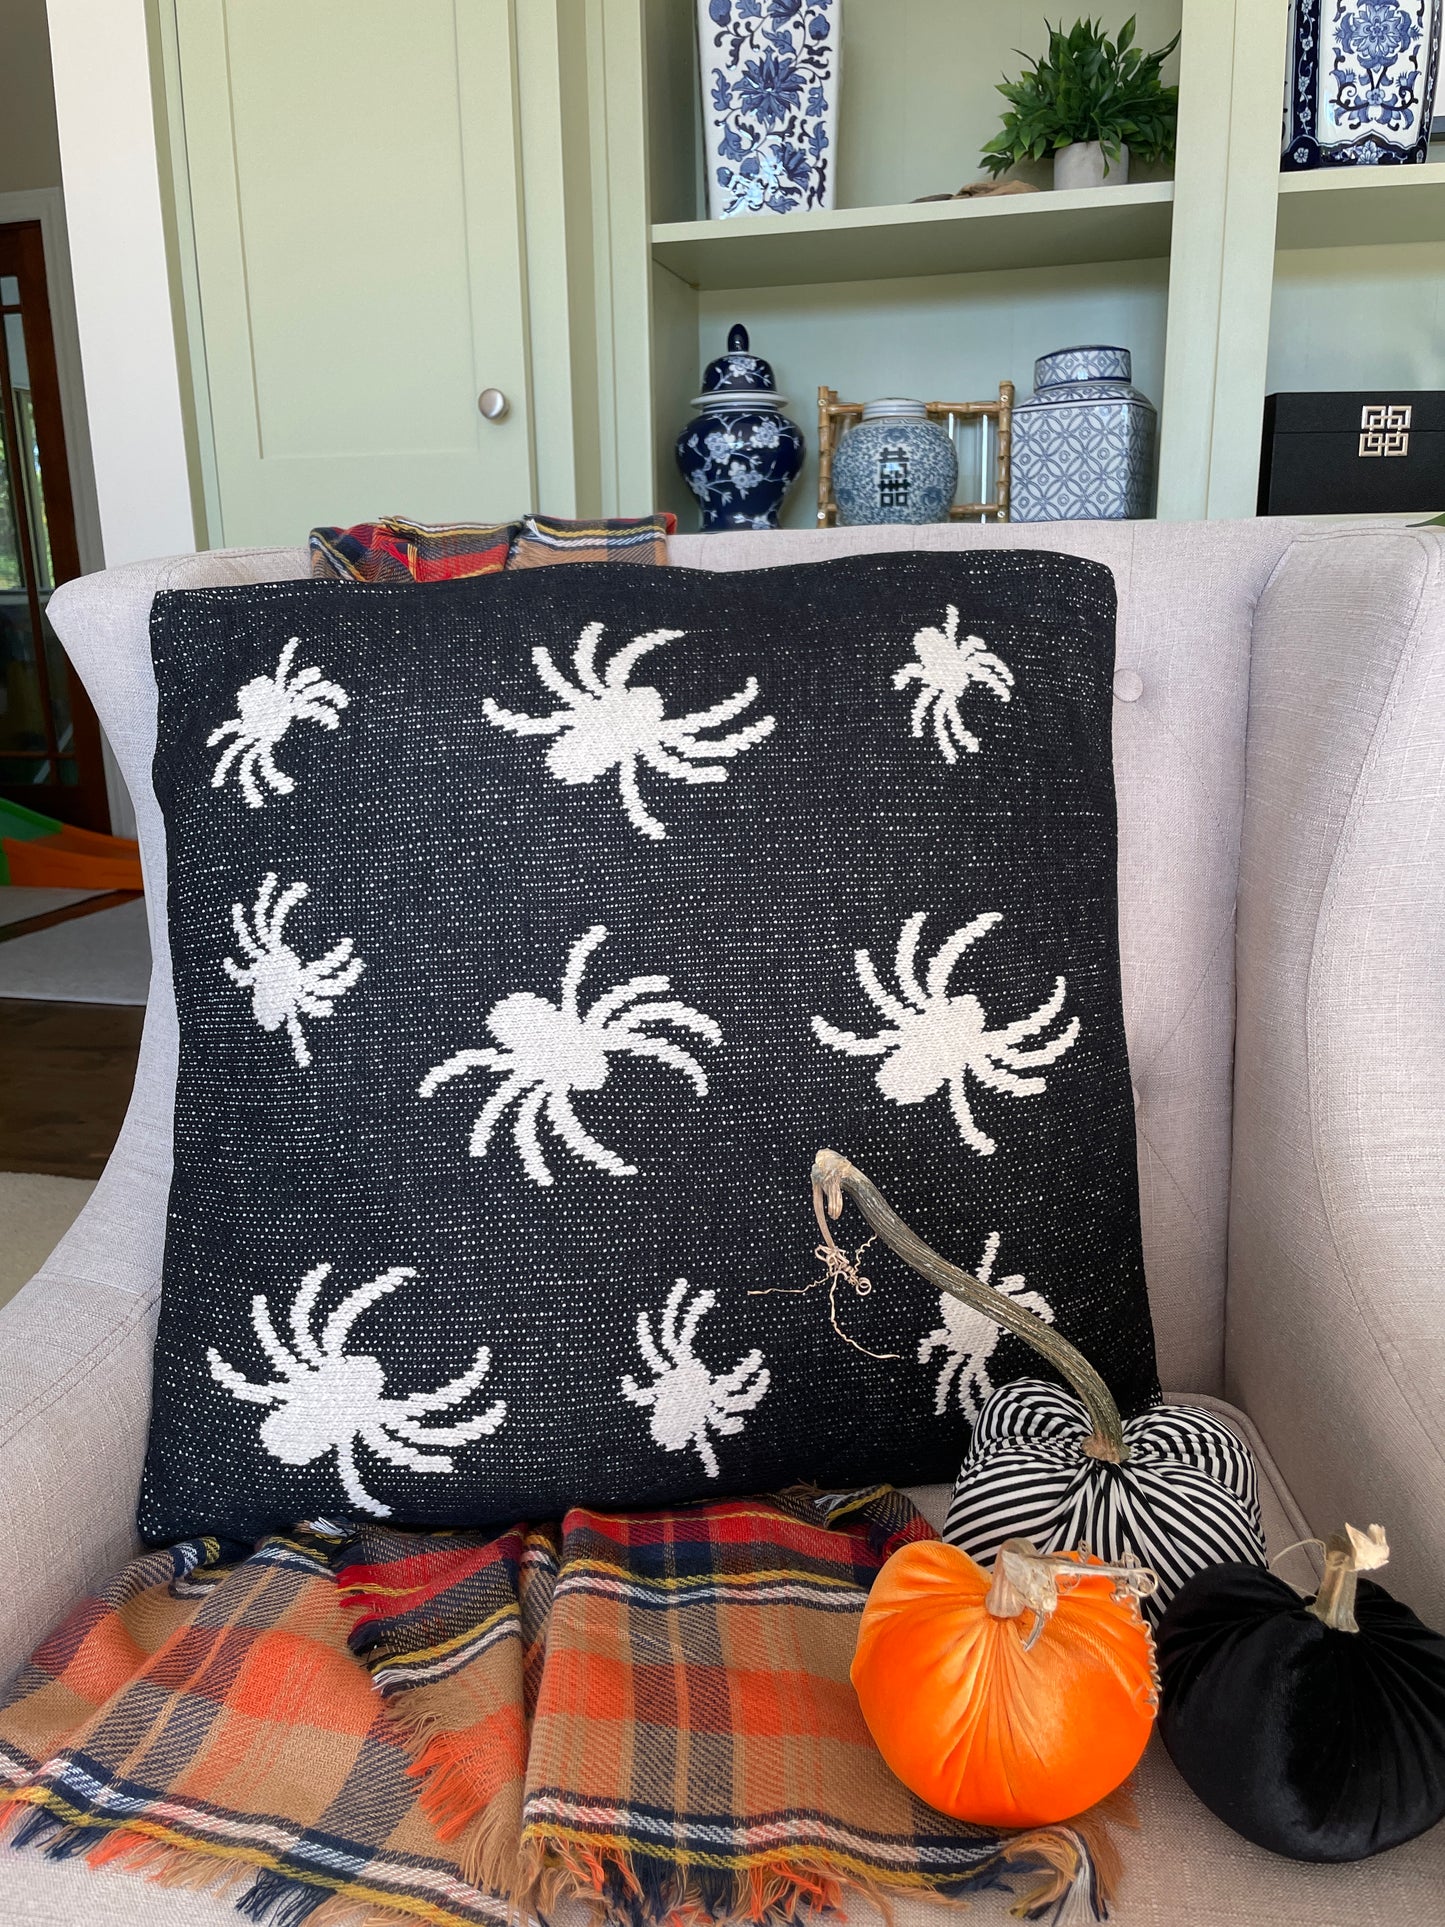 Cotton Knit Black & Cream Spider Pillow